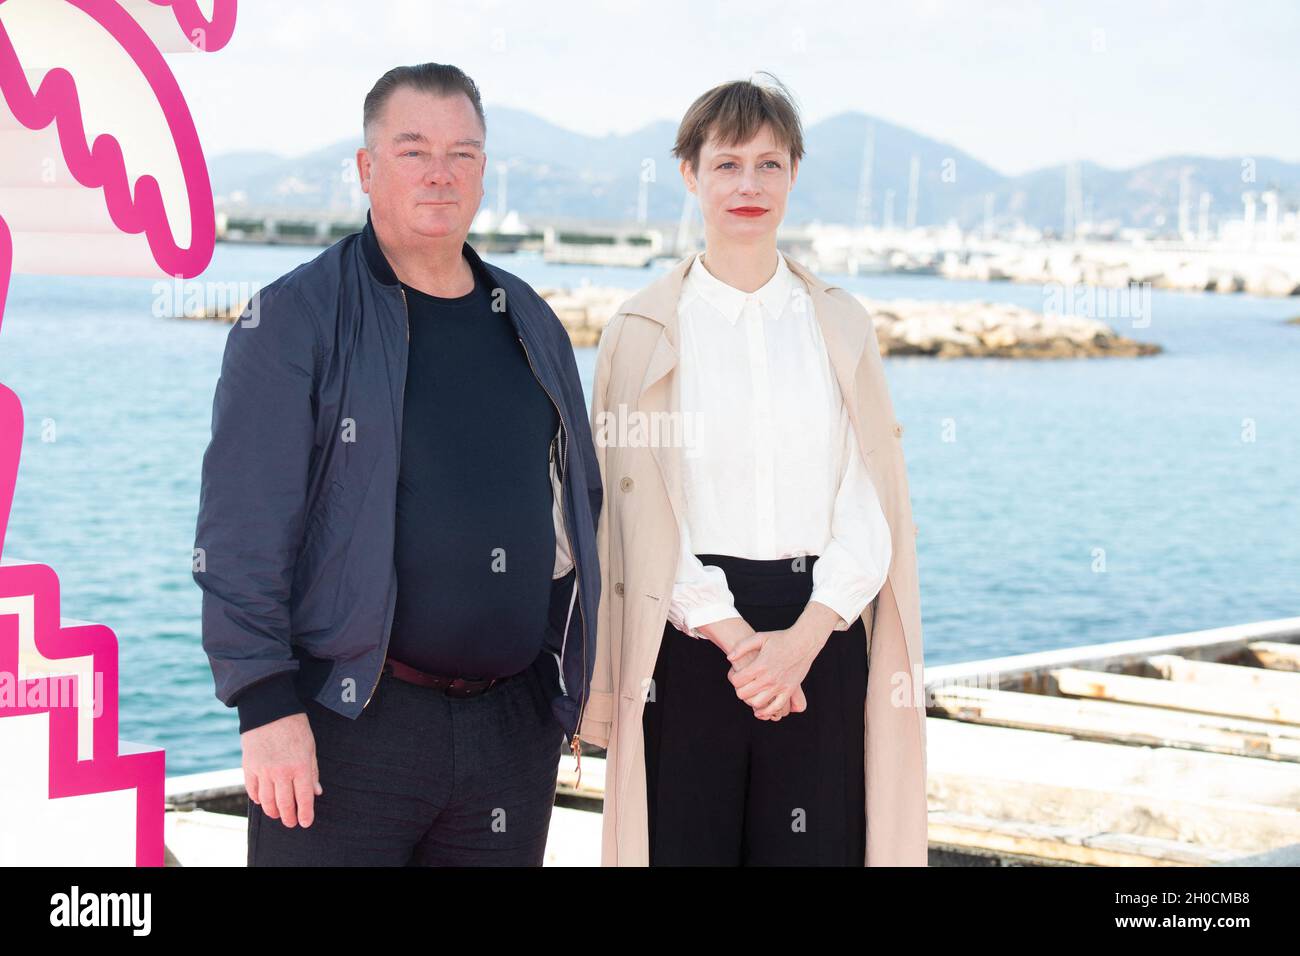 Peter Kurth e Katharina Marie Schubert partecipano alla fotocall allegatoria durante la quarta edizione del Festival Internazionale della Serie di Cannes (Canneseries) a Cannes, il 12 ottobre 2021, Francia. Foto di David Niviere/ABACAPRESS.COM Foto Stock